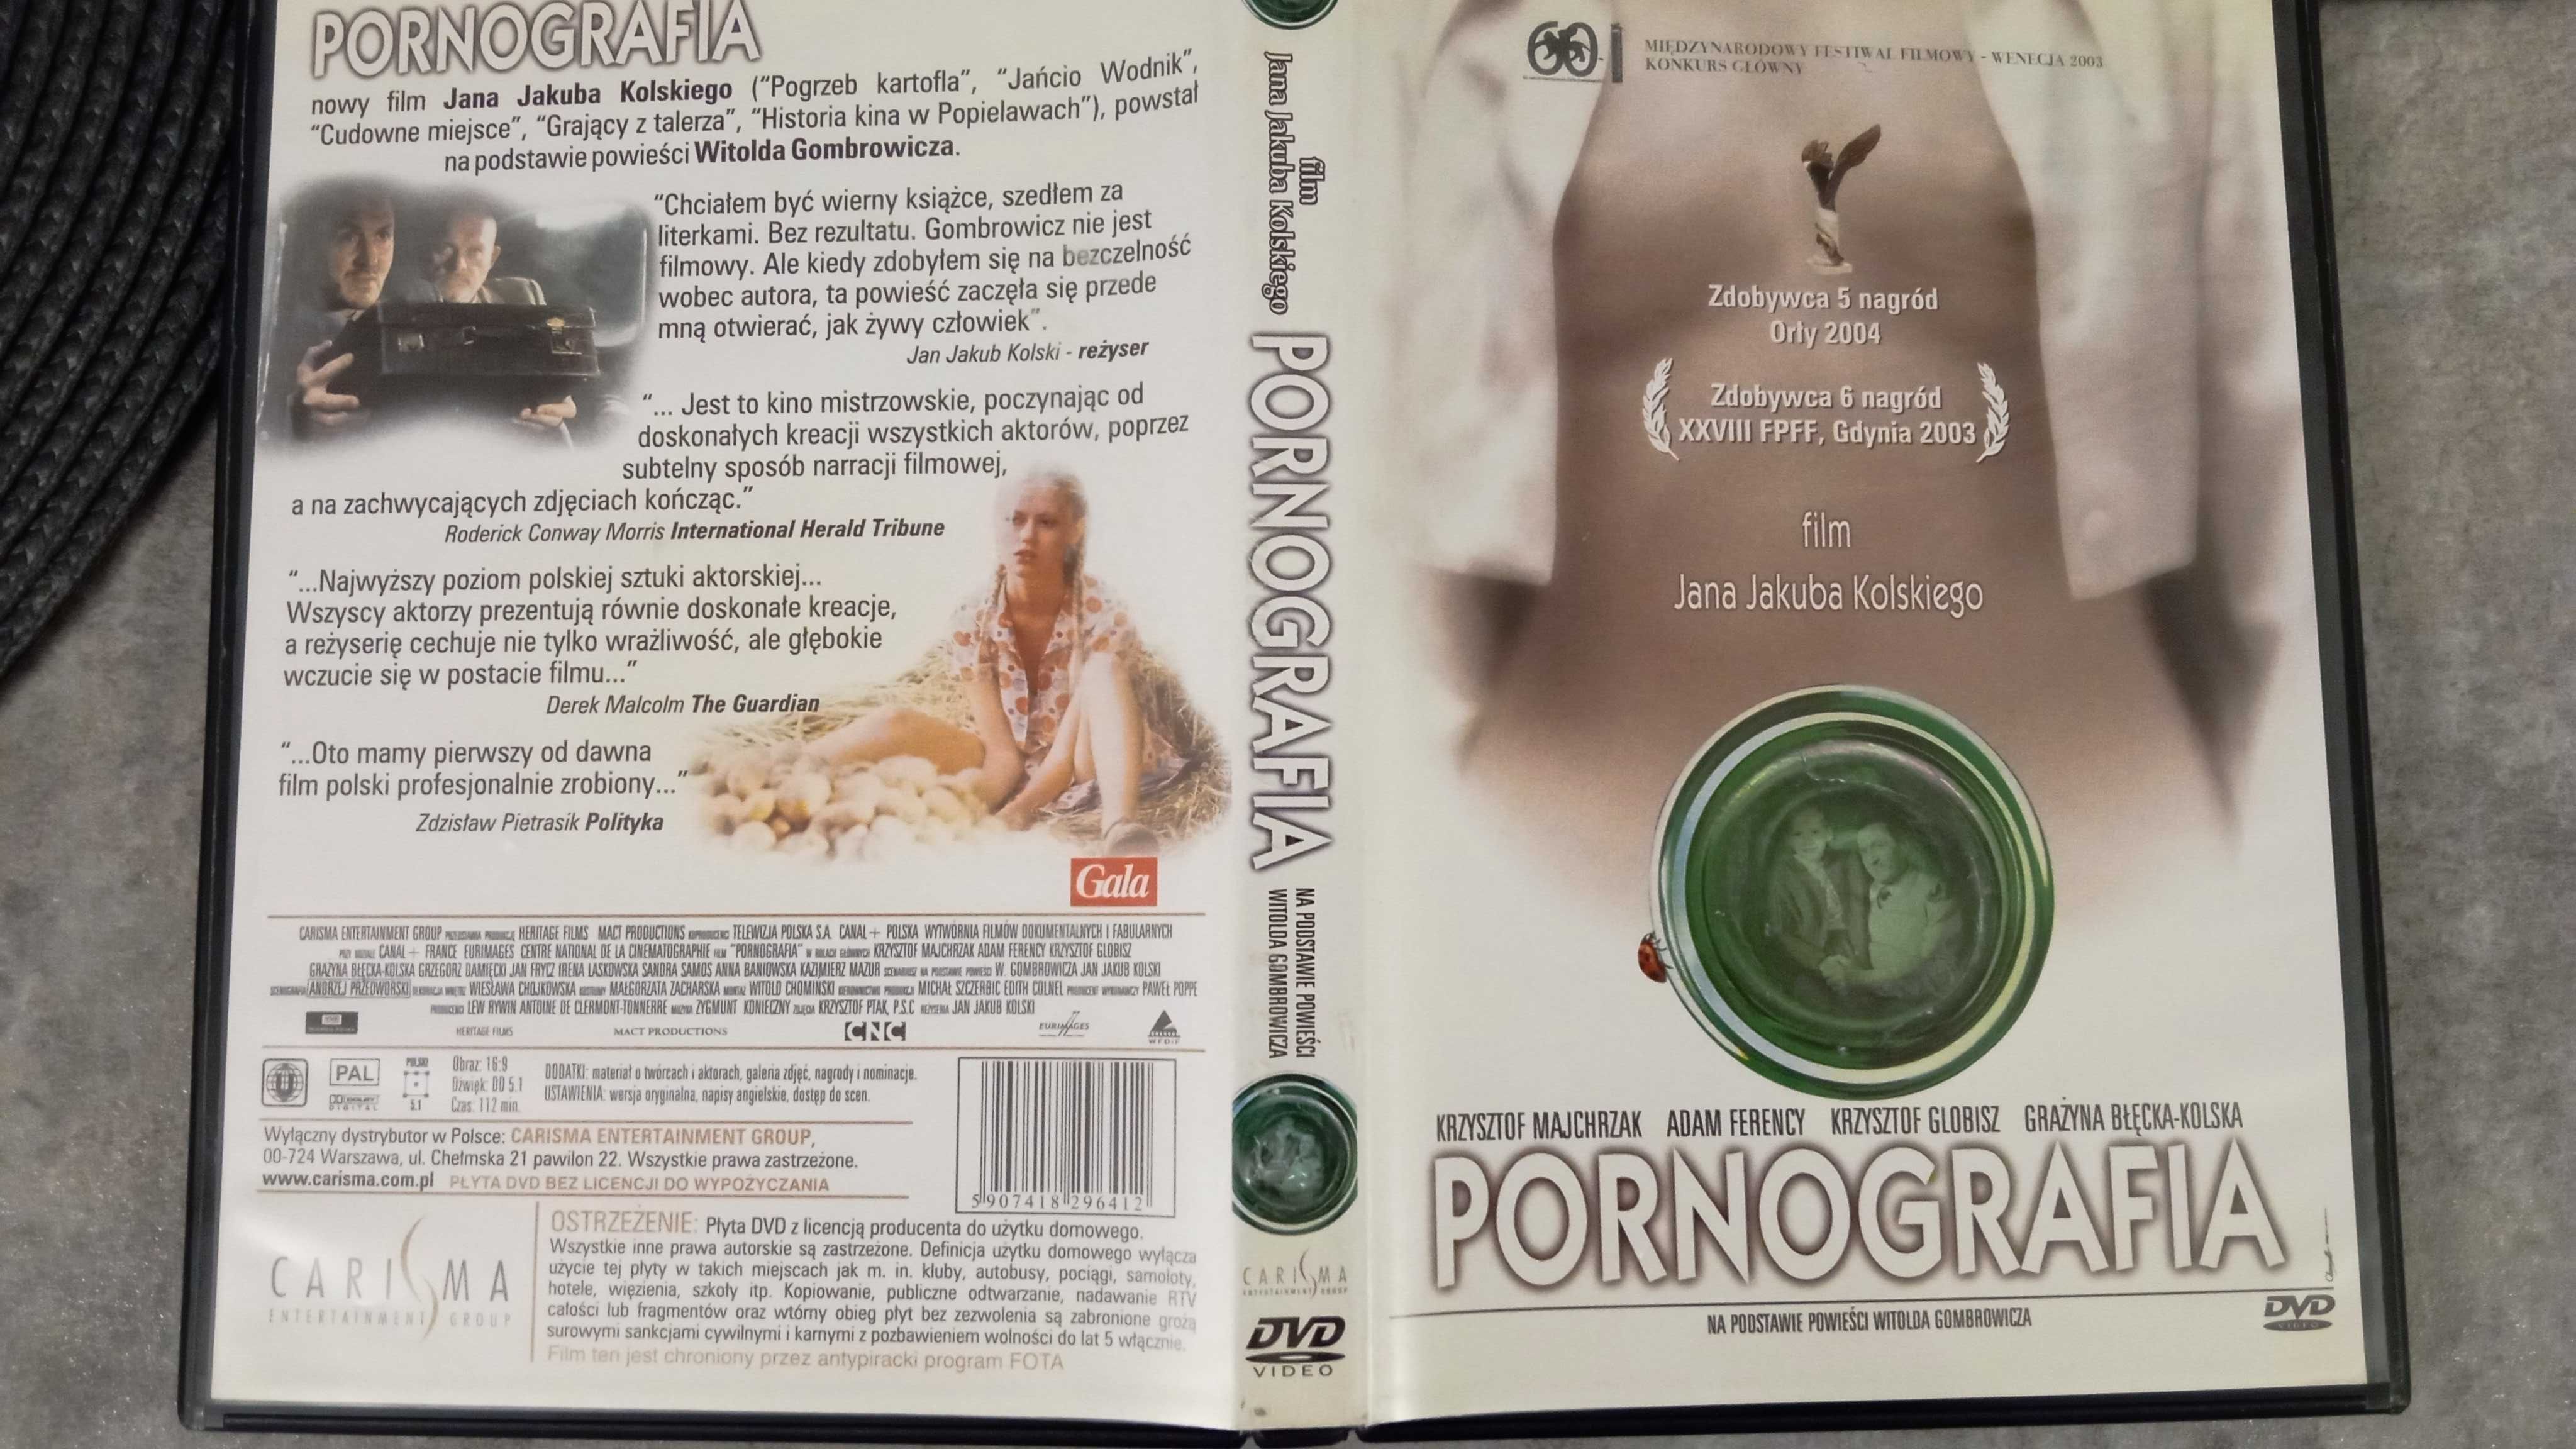 Film na DVD "Pornografia" na podstawie powieści W. Gombrowicza